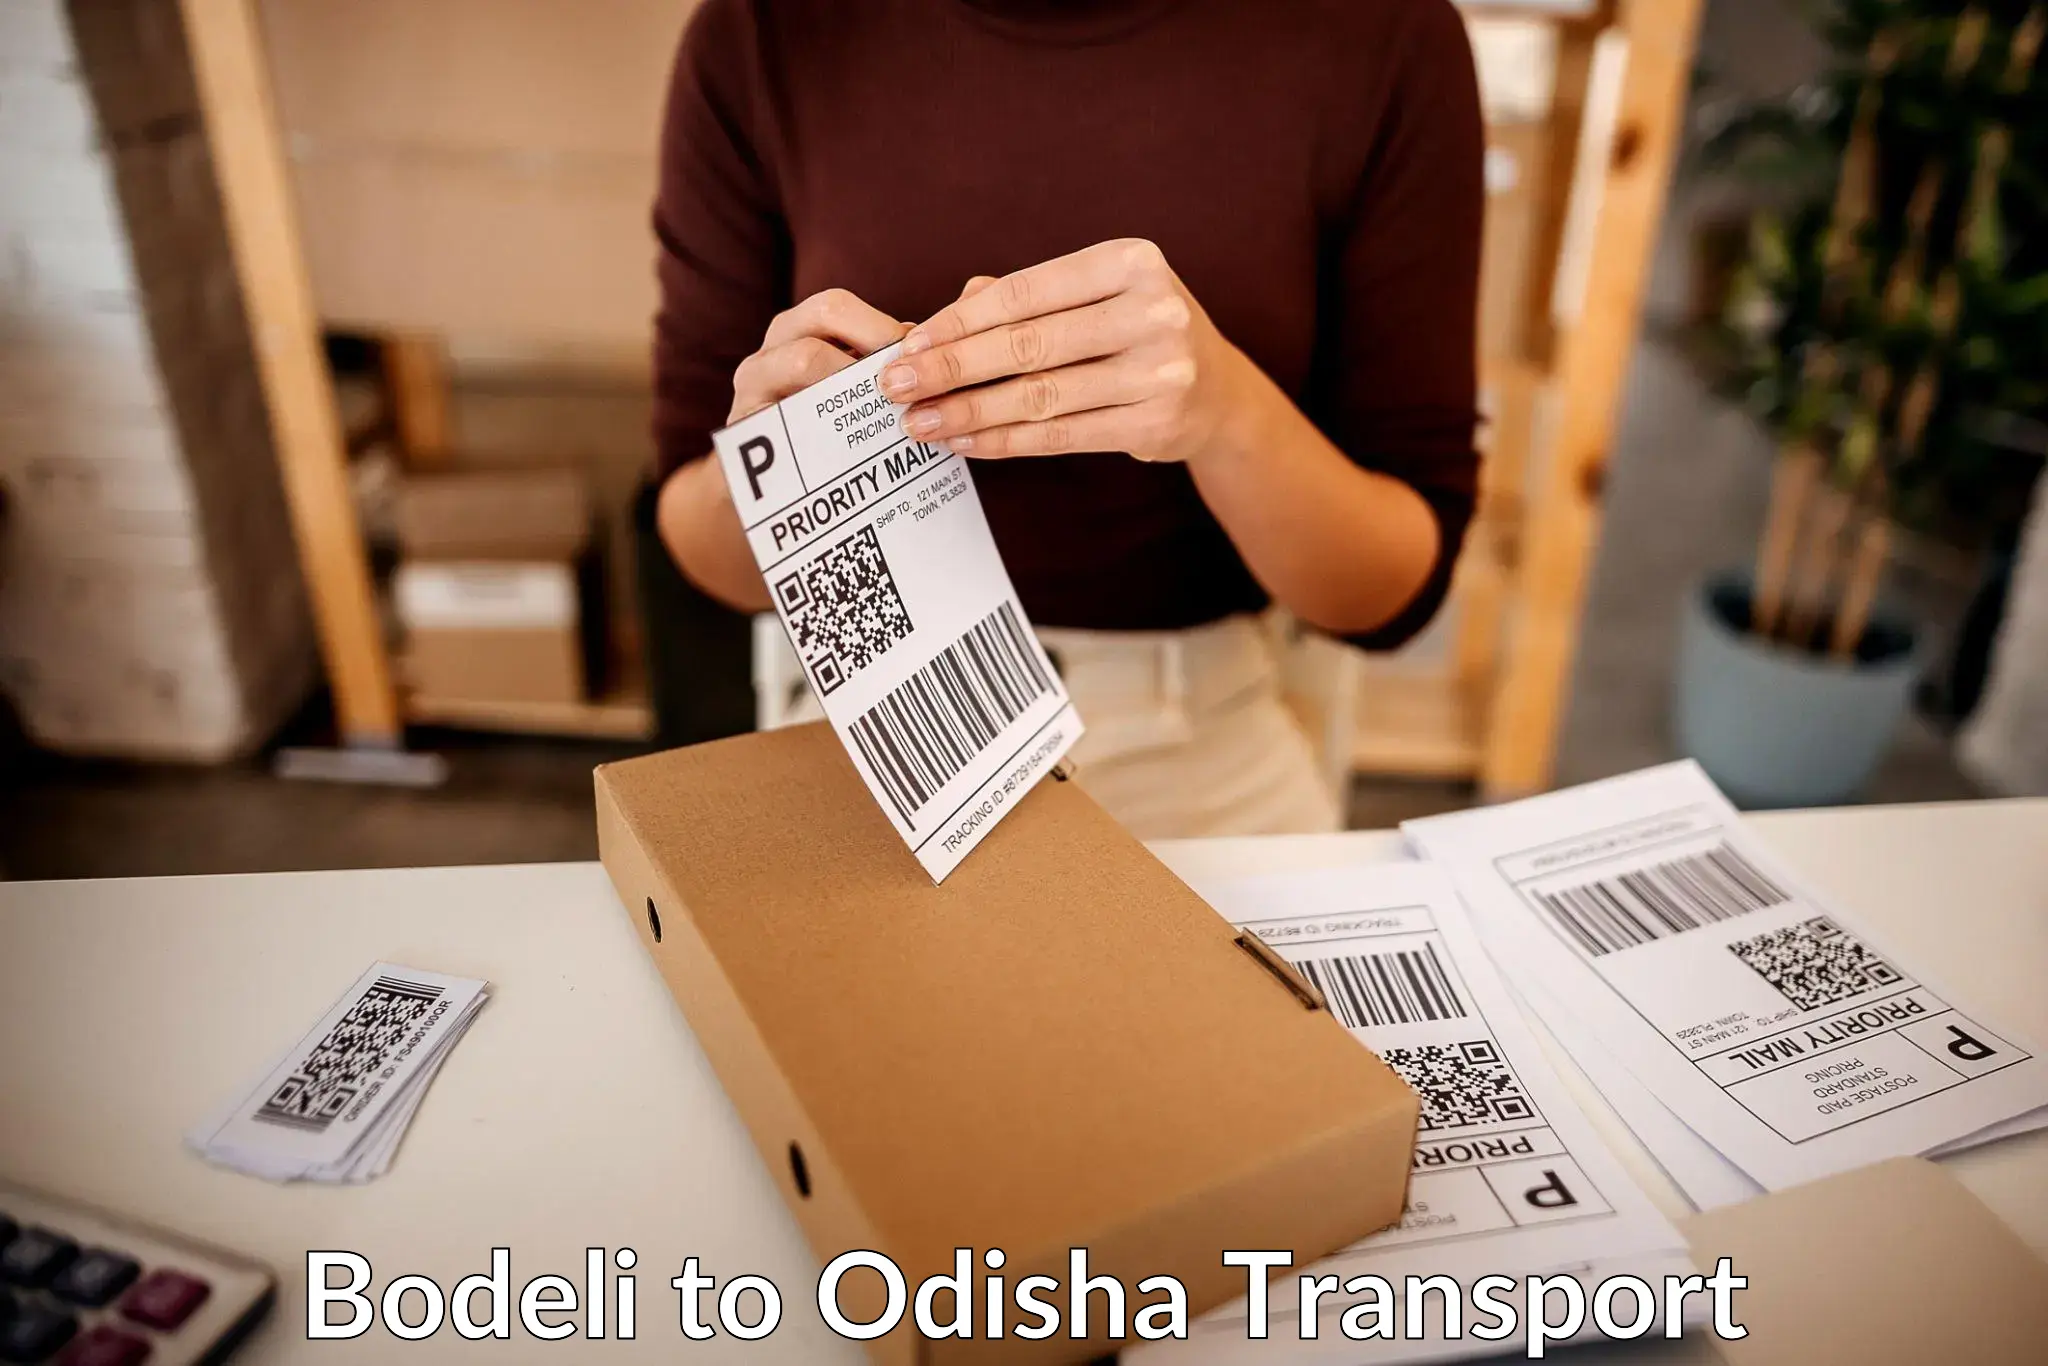 Pick up transport service Bodeli to Odisha